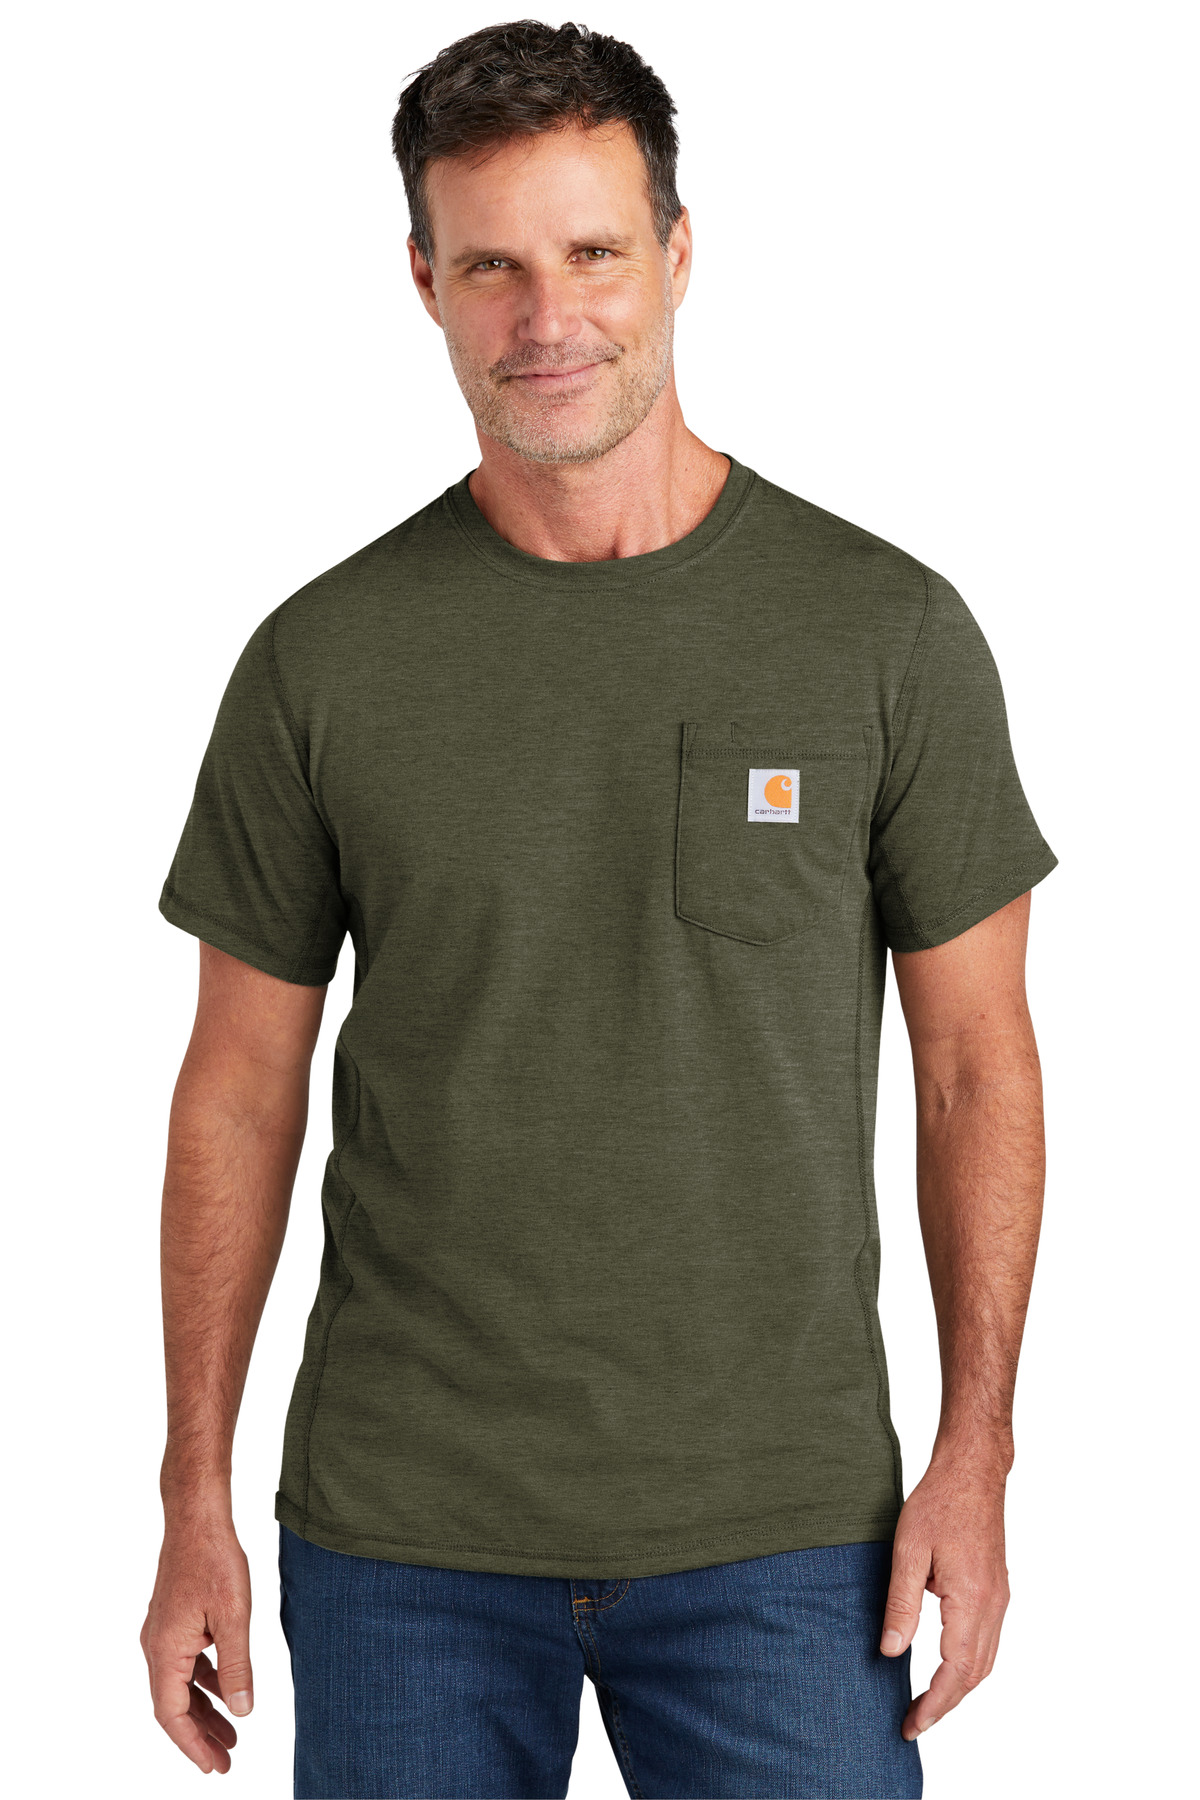 Carhartt Force Short Sleeve Pocket T-Shirt-Carhartt